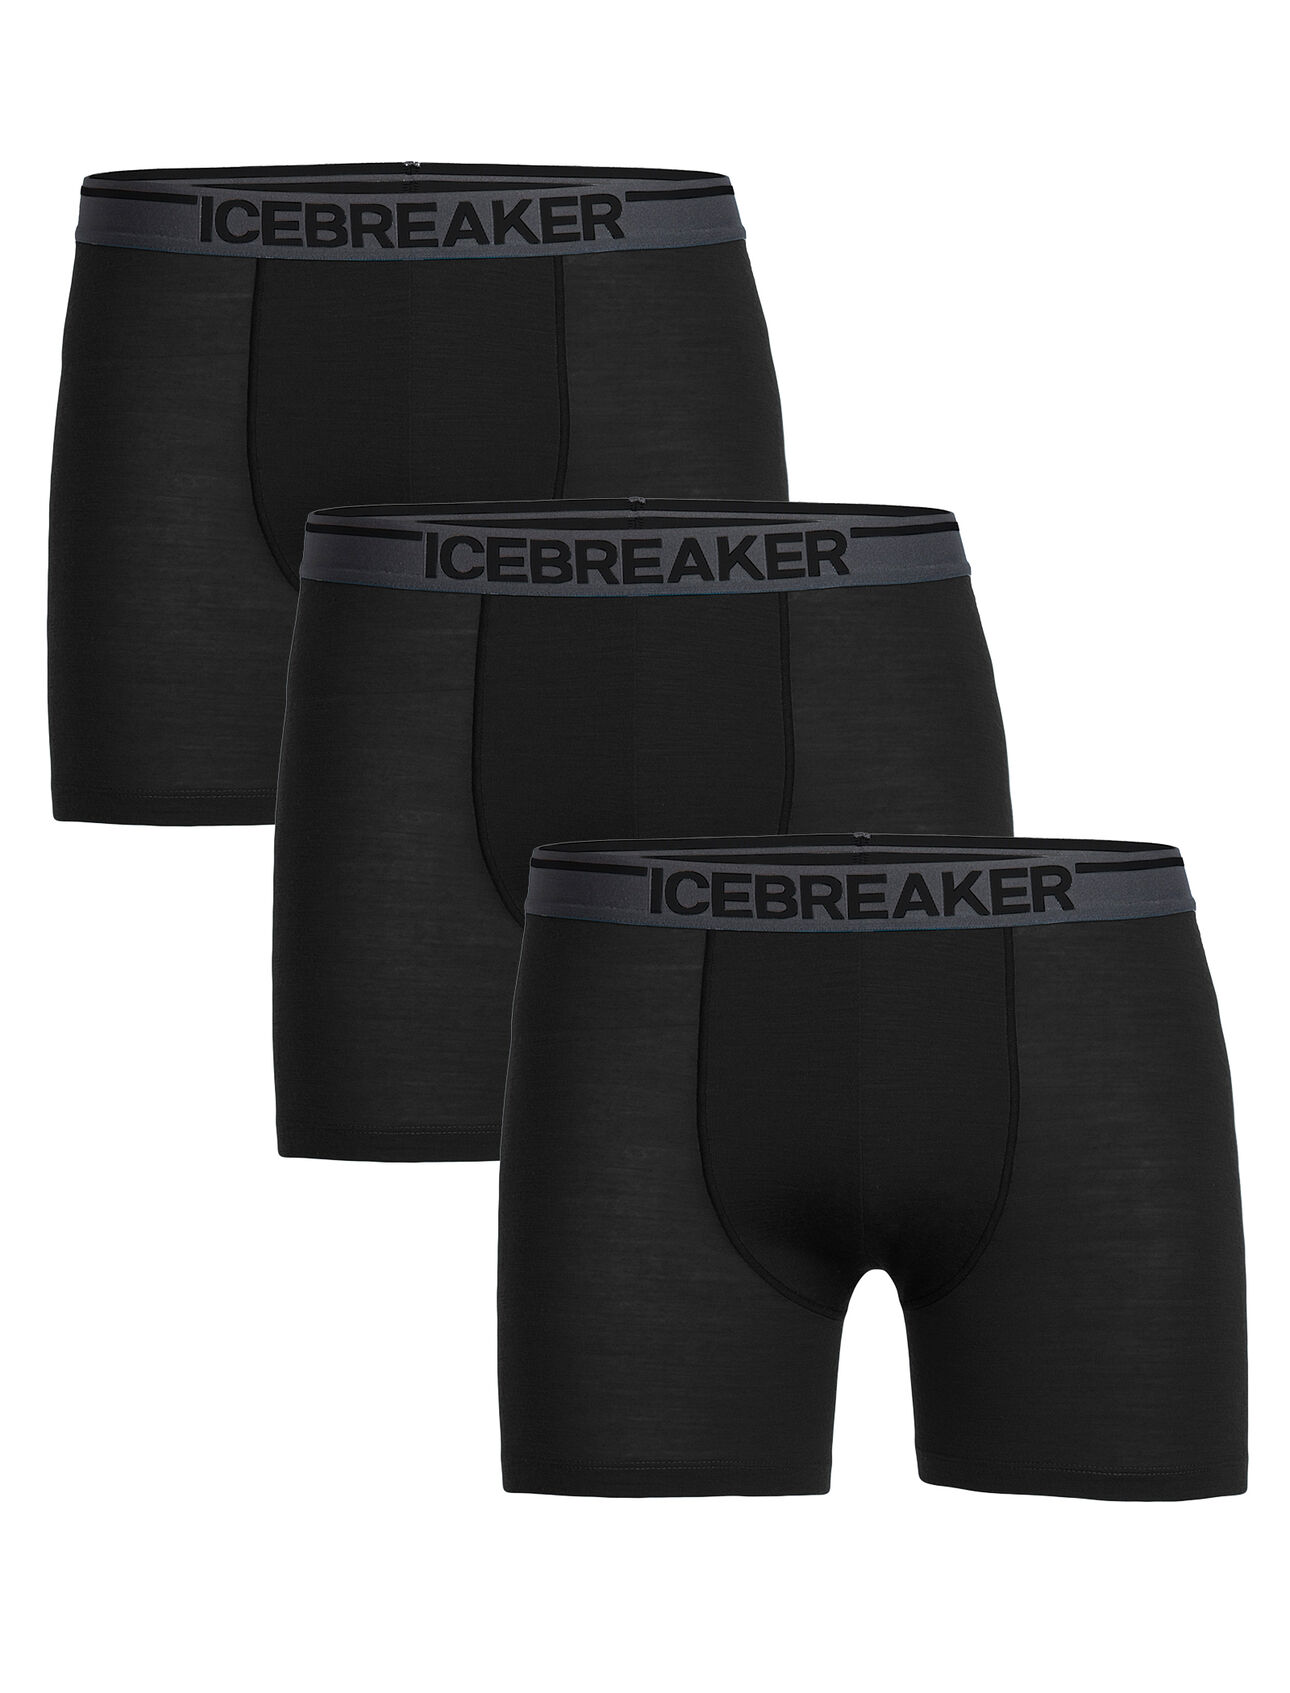 Merino Anatomica Boxers 3 Pack - Icebreaker (CA)